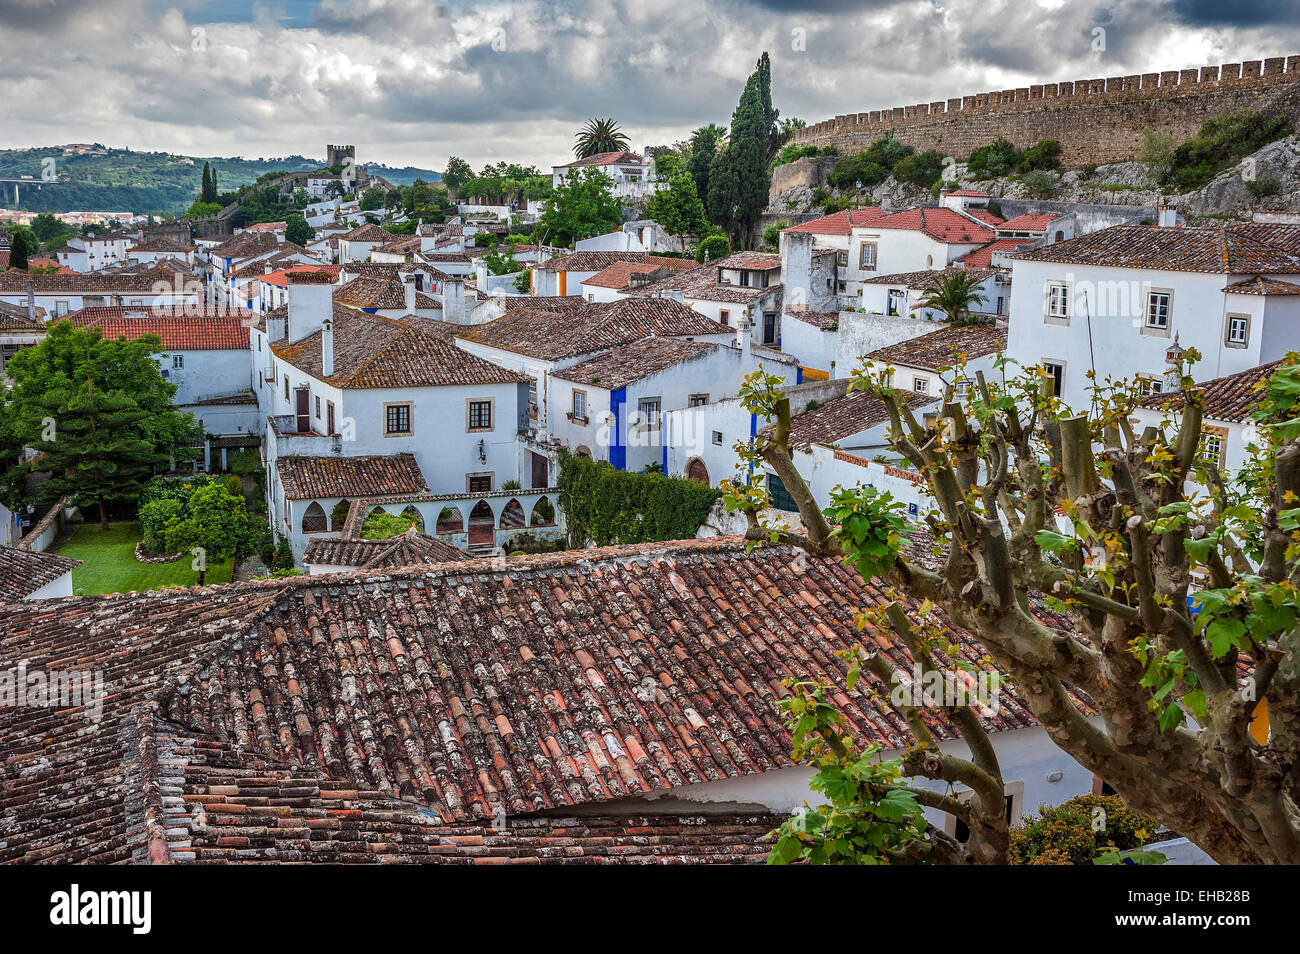 Portugal, Obidos - städtische Siedlung und das Schloss mit dem gleichen Namen mit der Festung. Blumen, Obstbäumen, weißen Villen, gepflastert Stockfoto